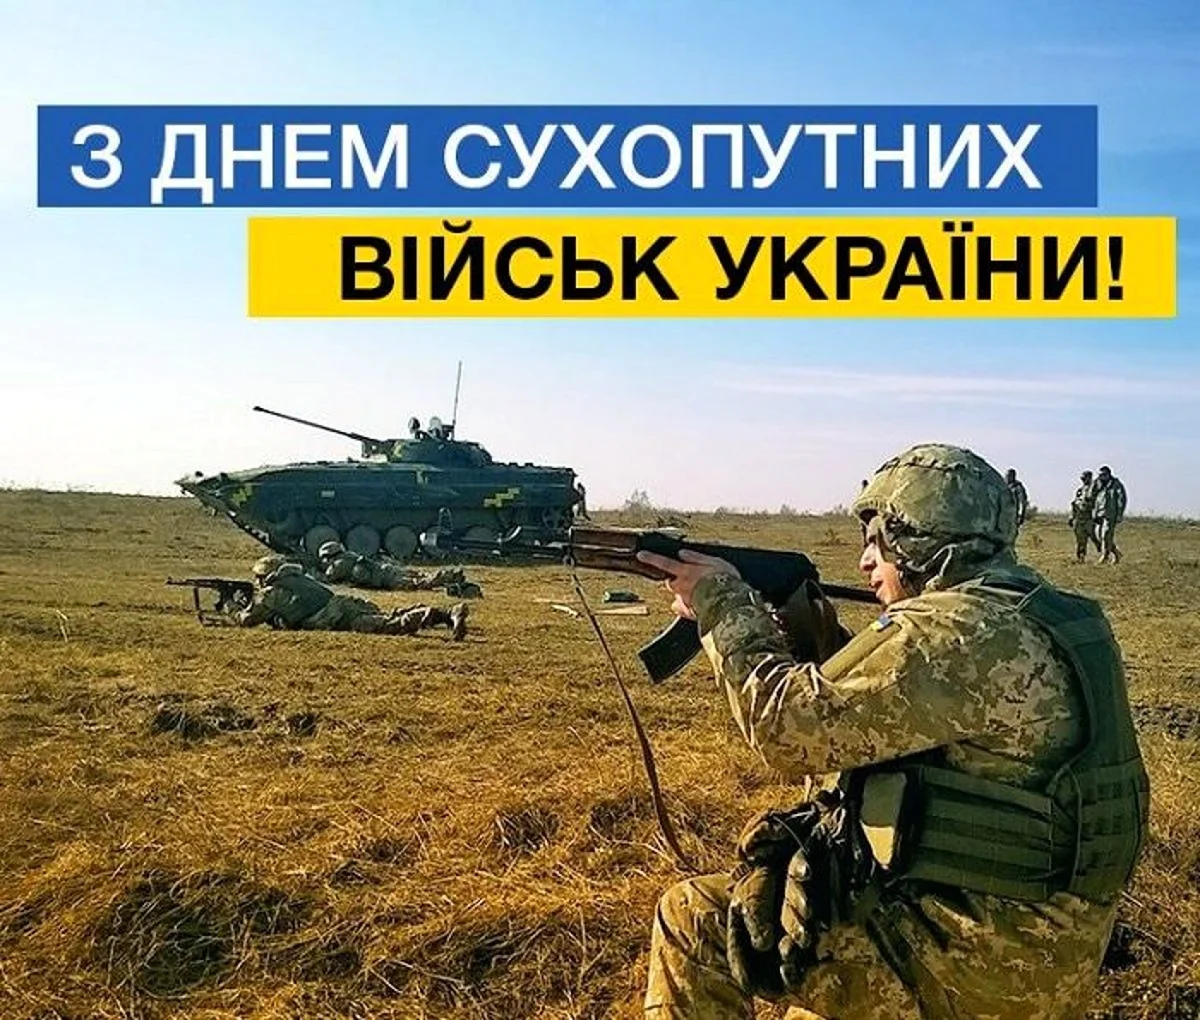 Картинки С Днем Сухопутных войск Украины (37 фото)